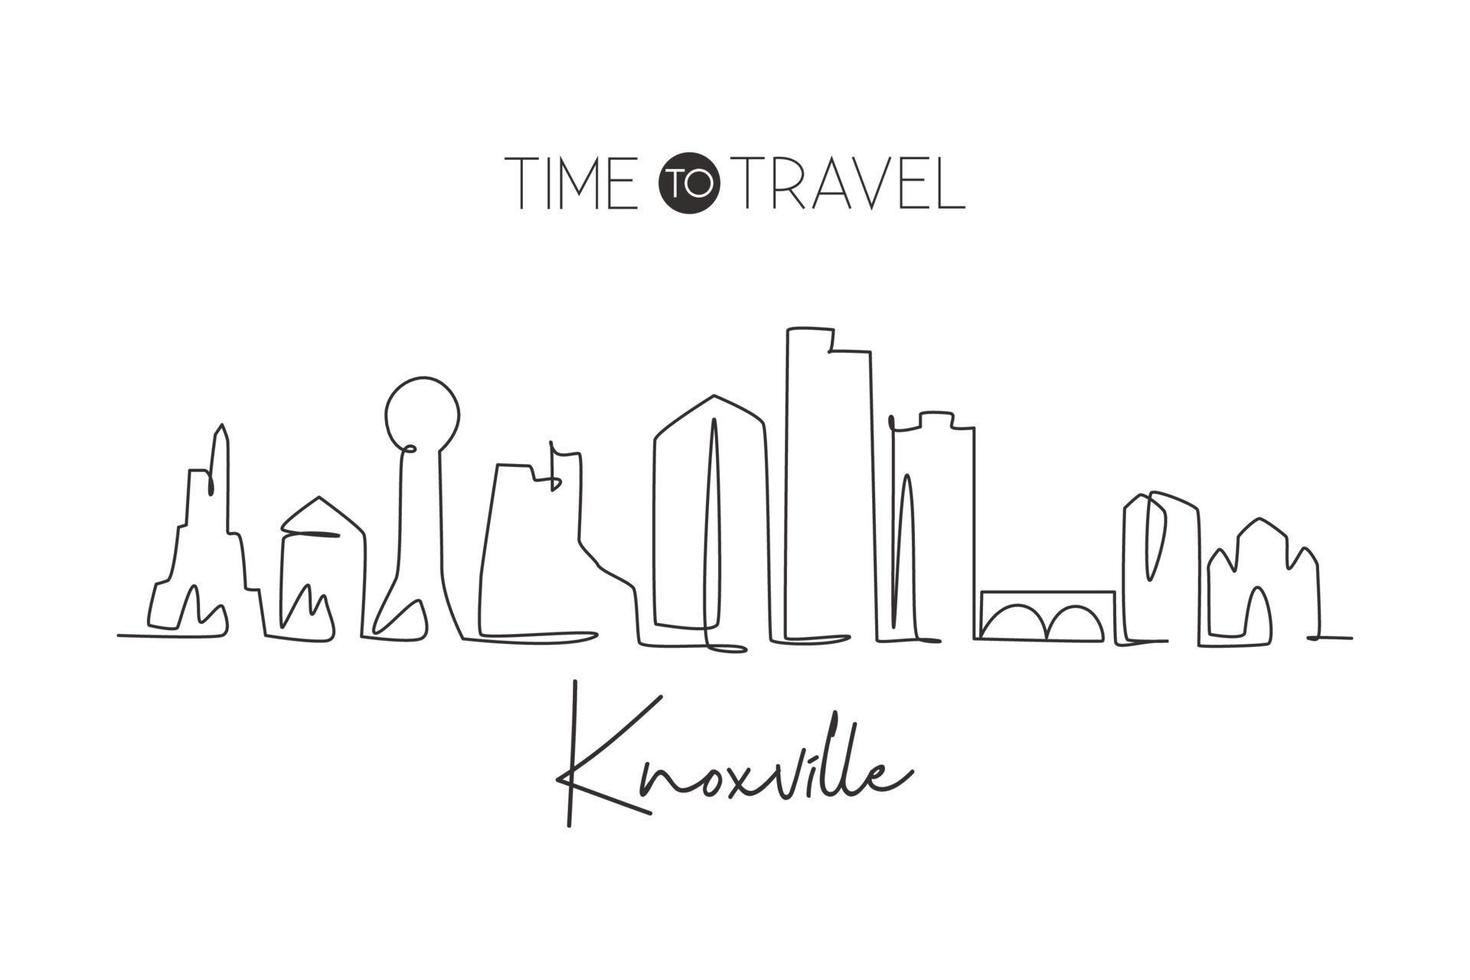 Eine durchgehende Strichzeichnung der Skyline von Knoxville, Tennessee. schönes Wahrzeichen. Weltlandschaftstourismus Reisehauptwanddekor-Plakatdruck. stilvolle einzeilig zeichnende Design-Vektorillustration vektor